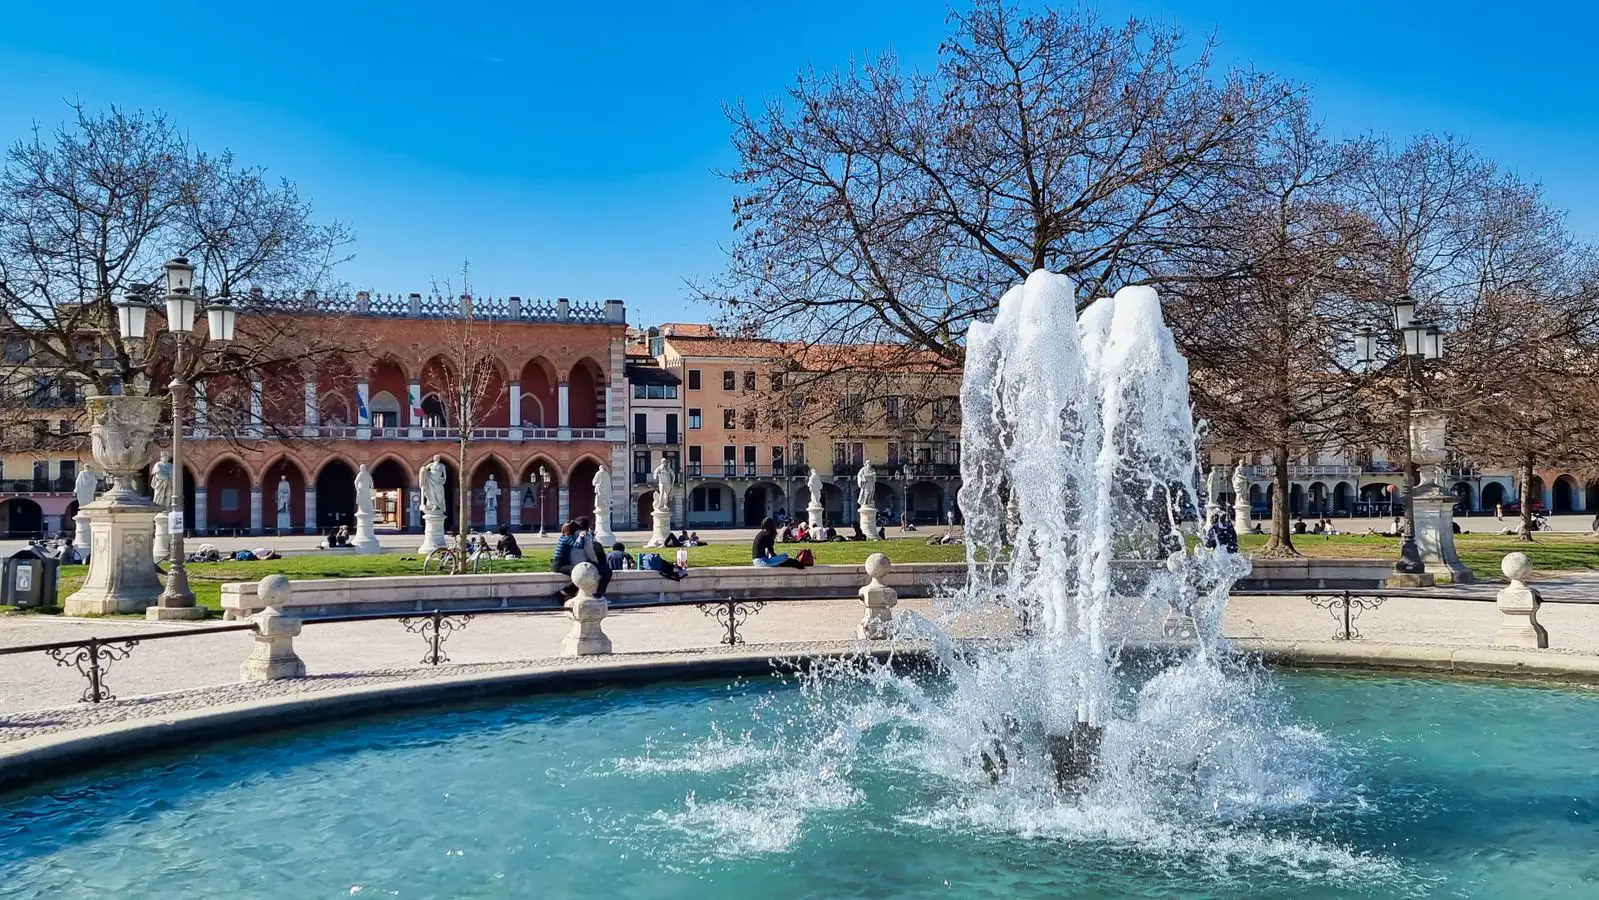 Prato della Valle ist einer der beliebtesten Orte in Padua und der drittgrößte Platz in Europa. 